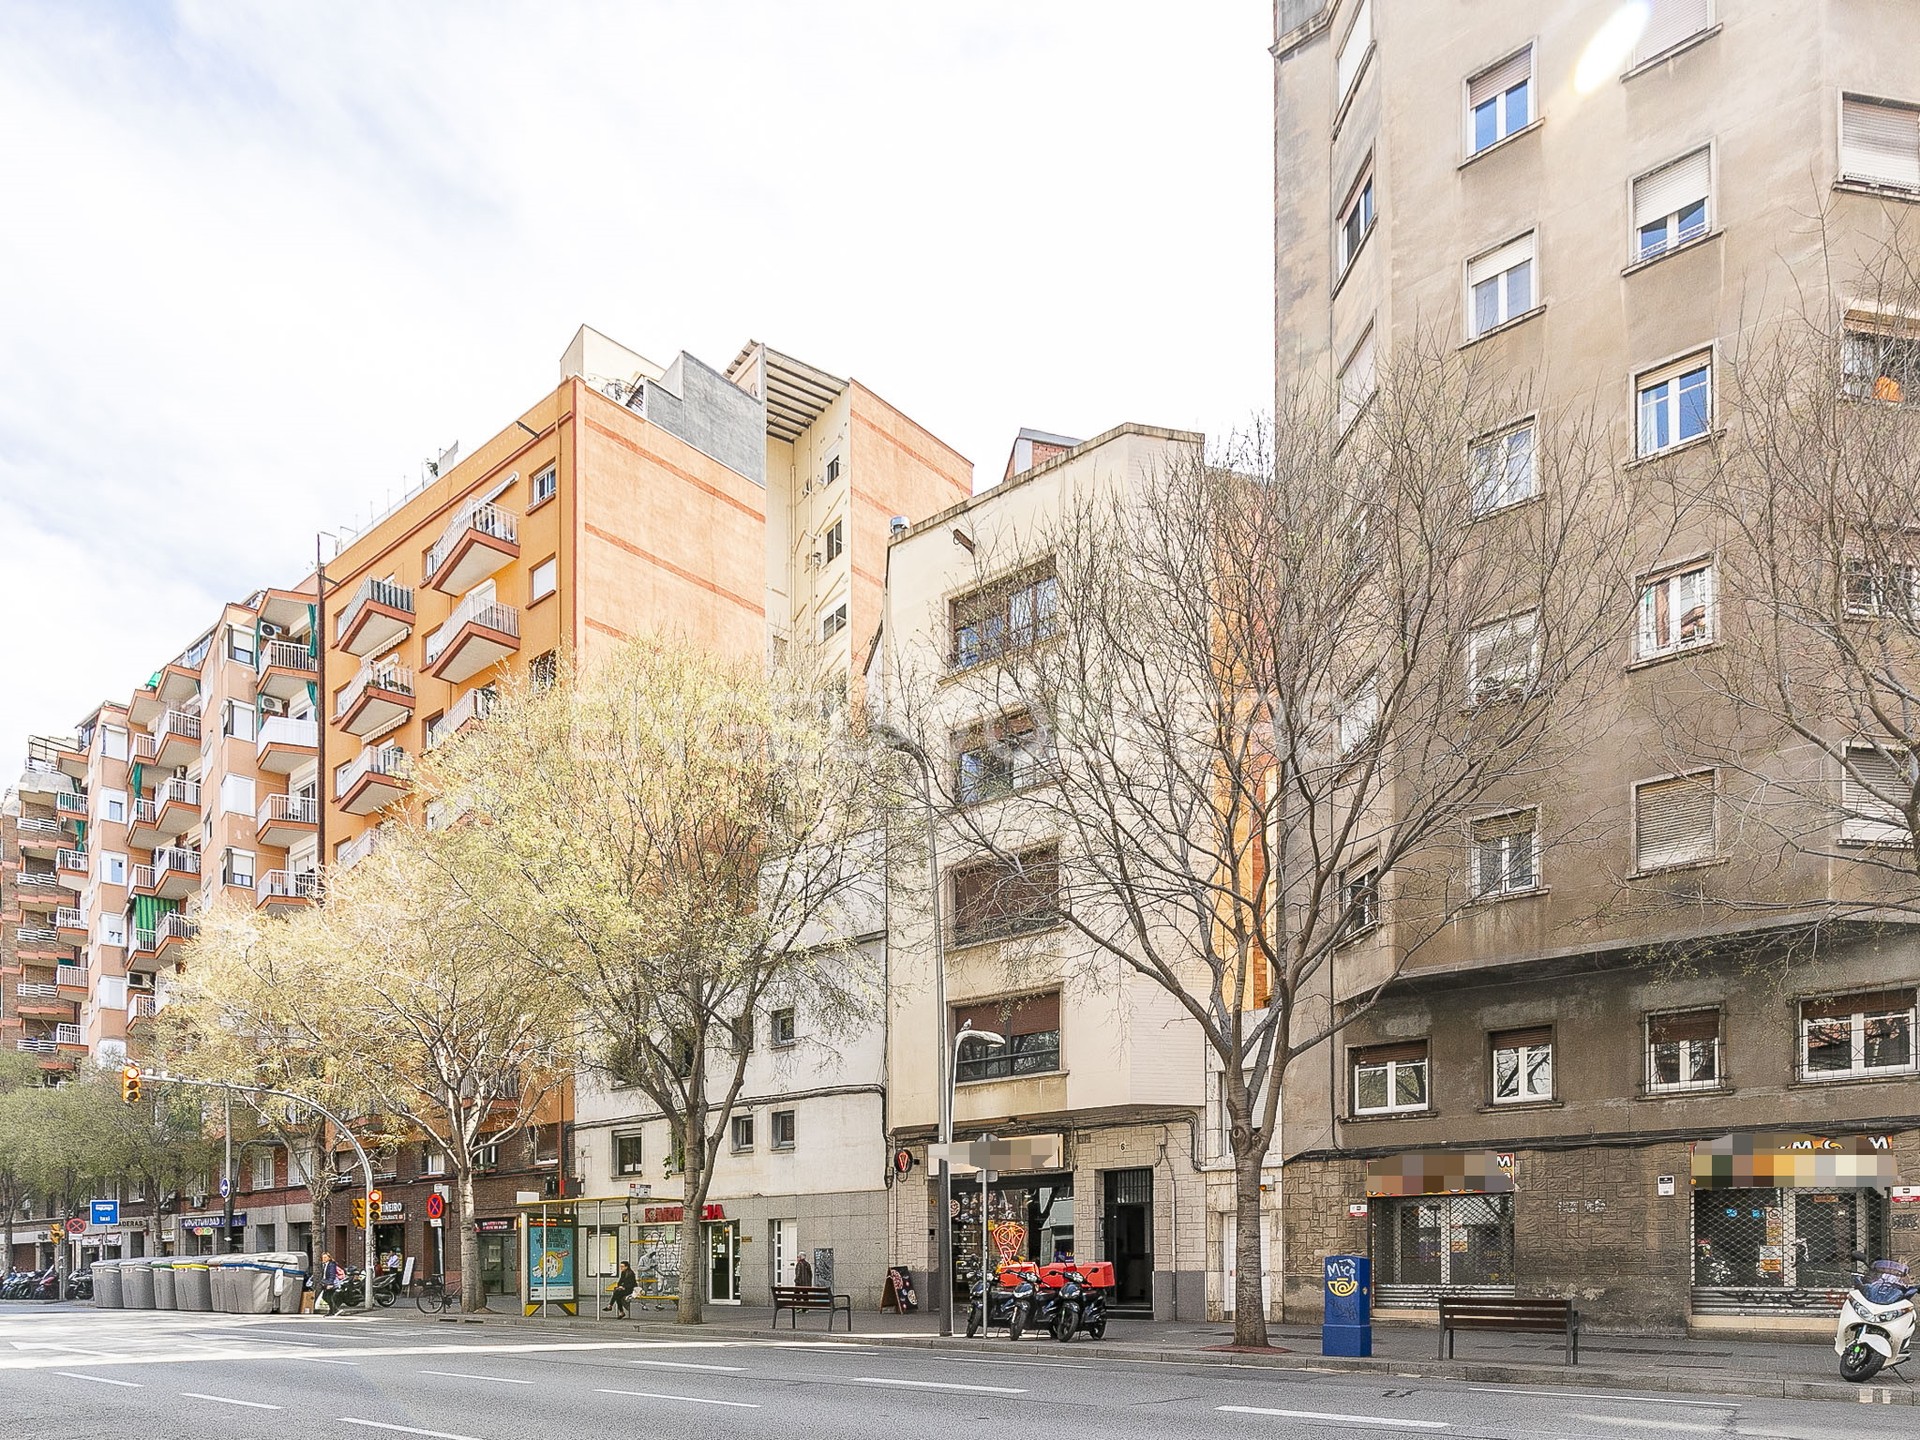 Inversión / Residencial inversión en La Maternitat I Sant Ramon - FotoE_V-32.jpg